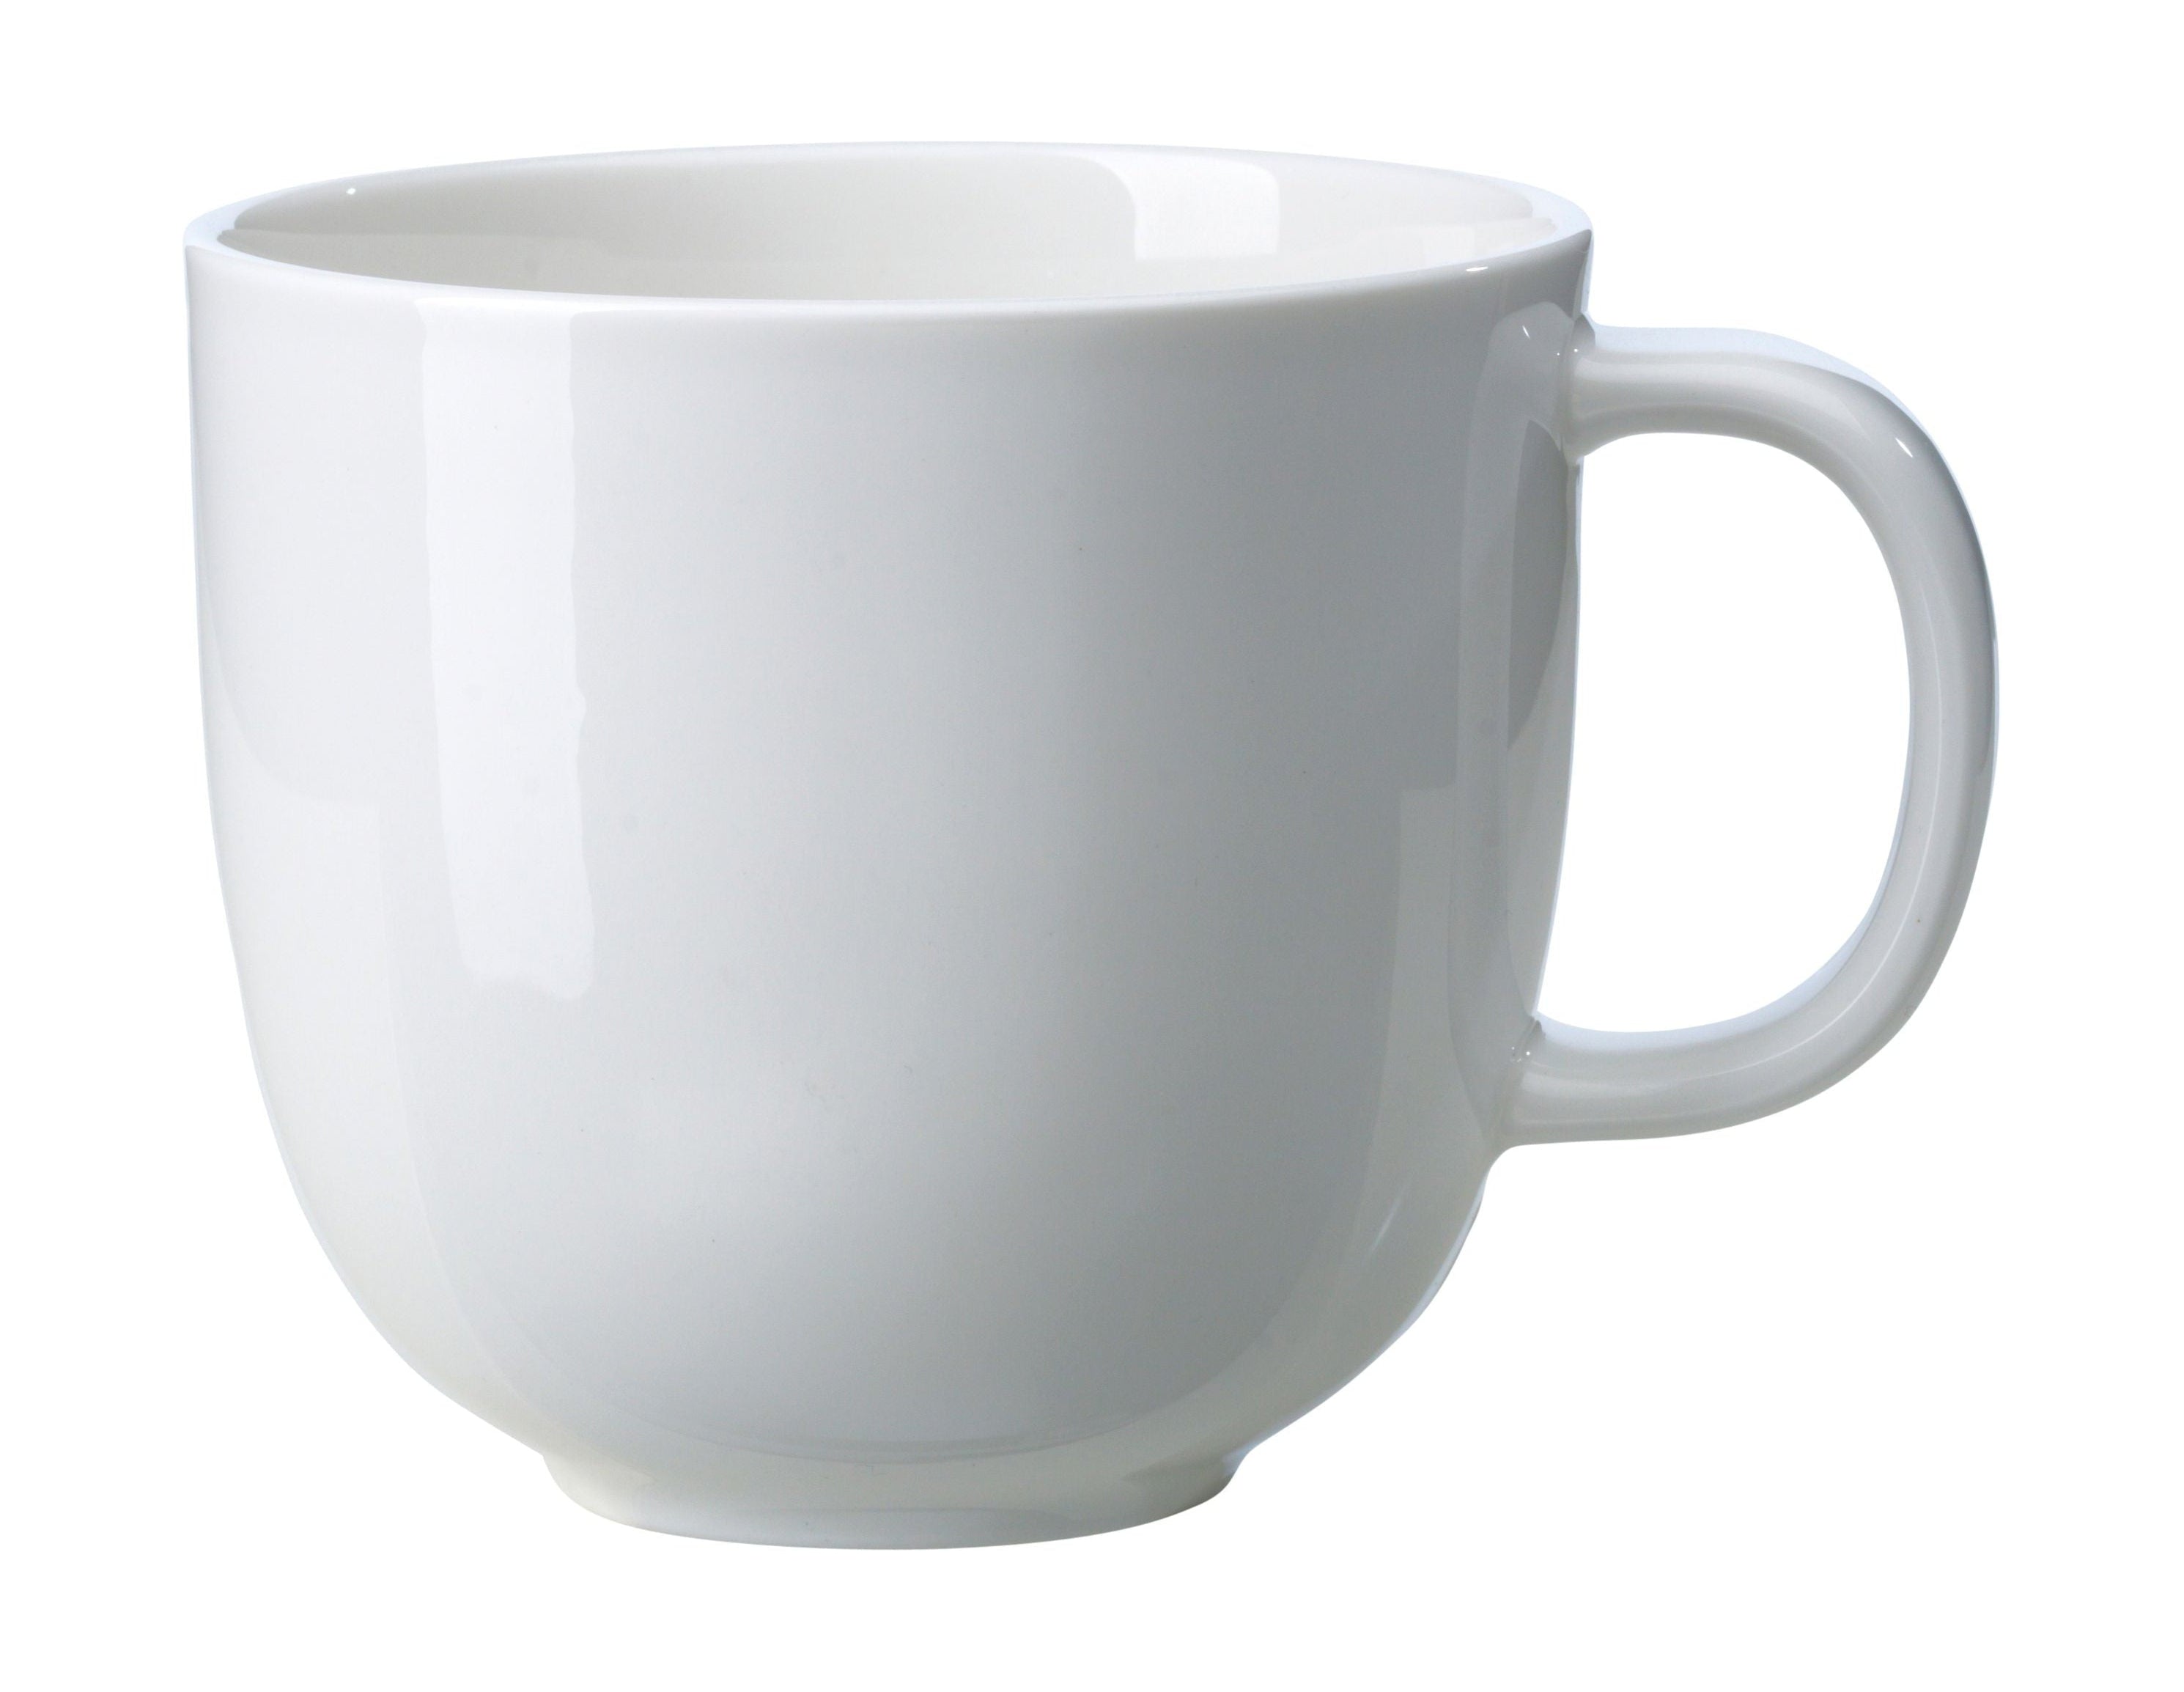 Rörstrand Inwhite Mug, 35 Cl